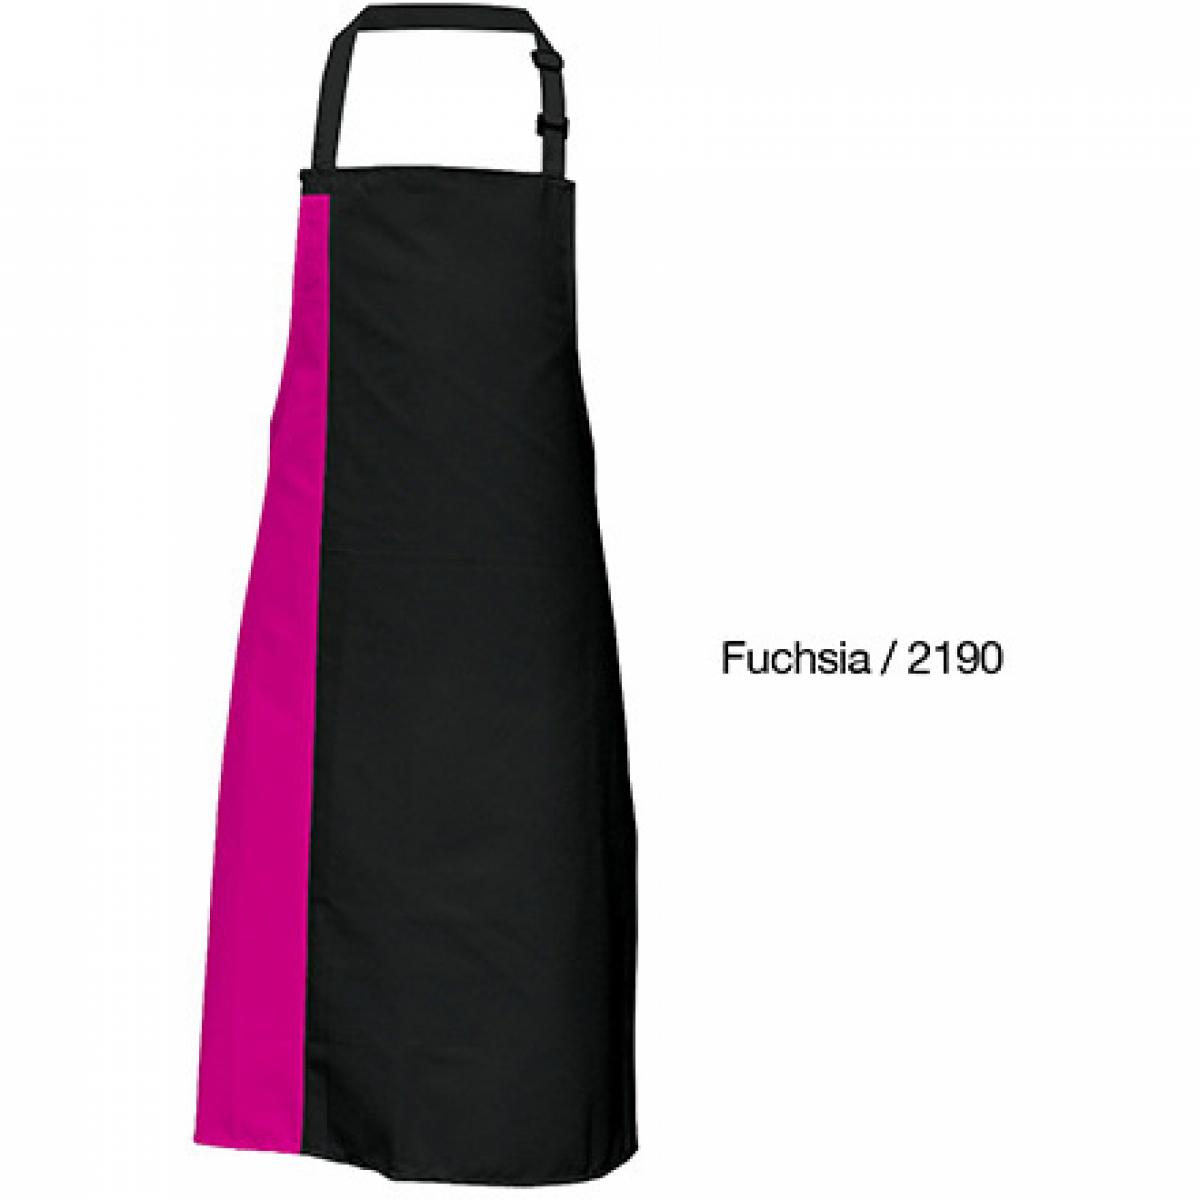 Hersteller: Link Kitchen Wear Herstellernummer: DS8572 Artikelbezeichnung: Duo Apron - 72 x 85 cm - Waschbar bis 60 °C Farbe: Black/Fuchsia (ca. Pantone 219)